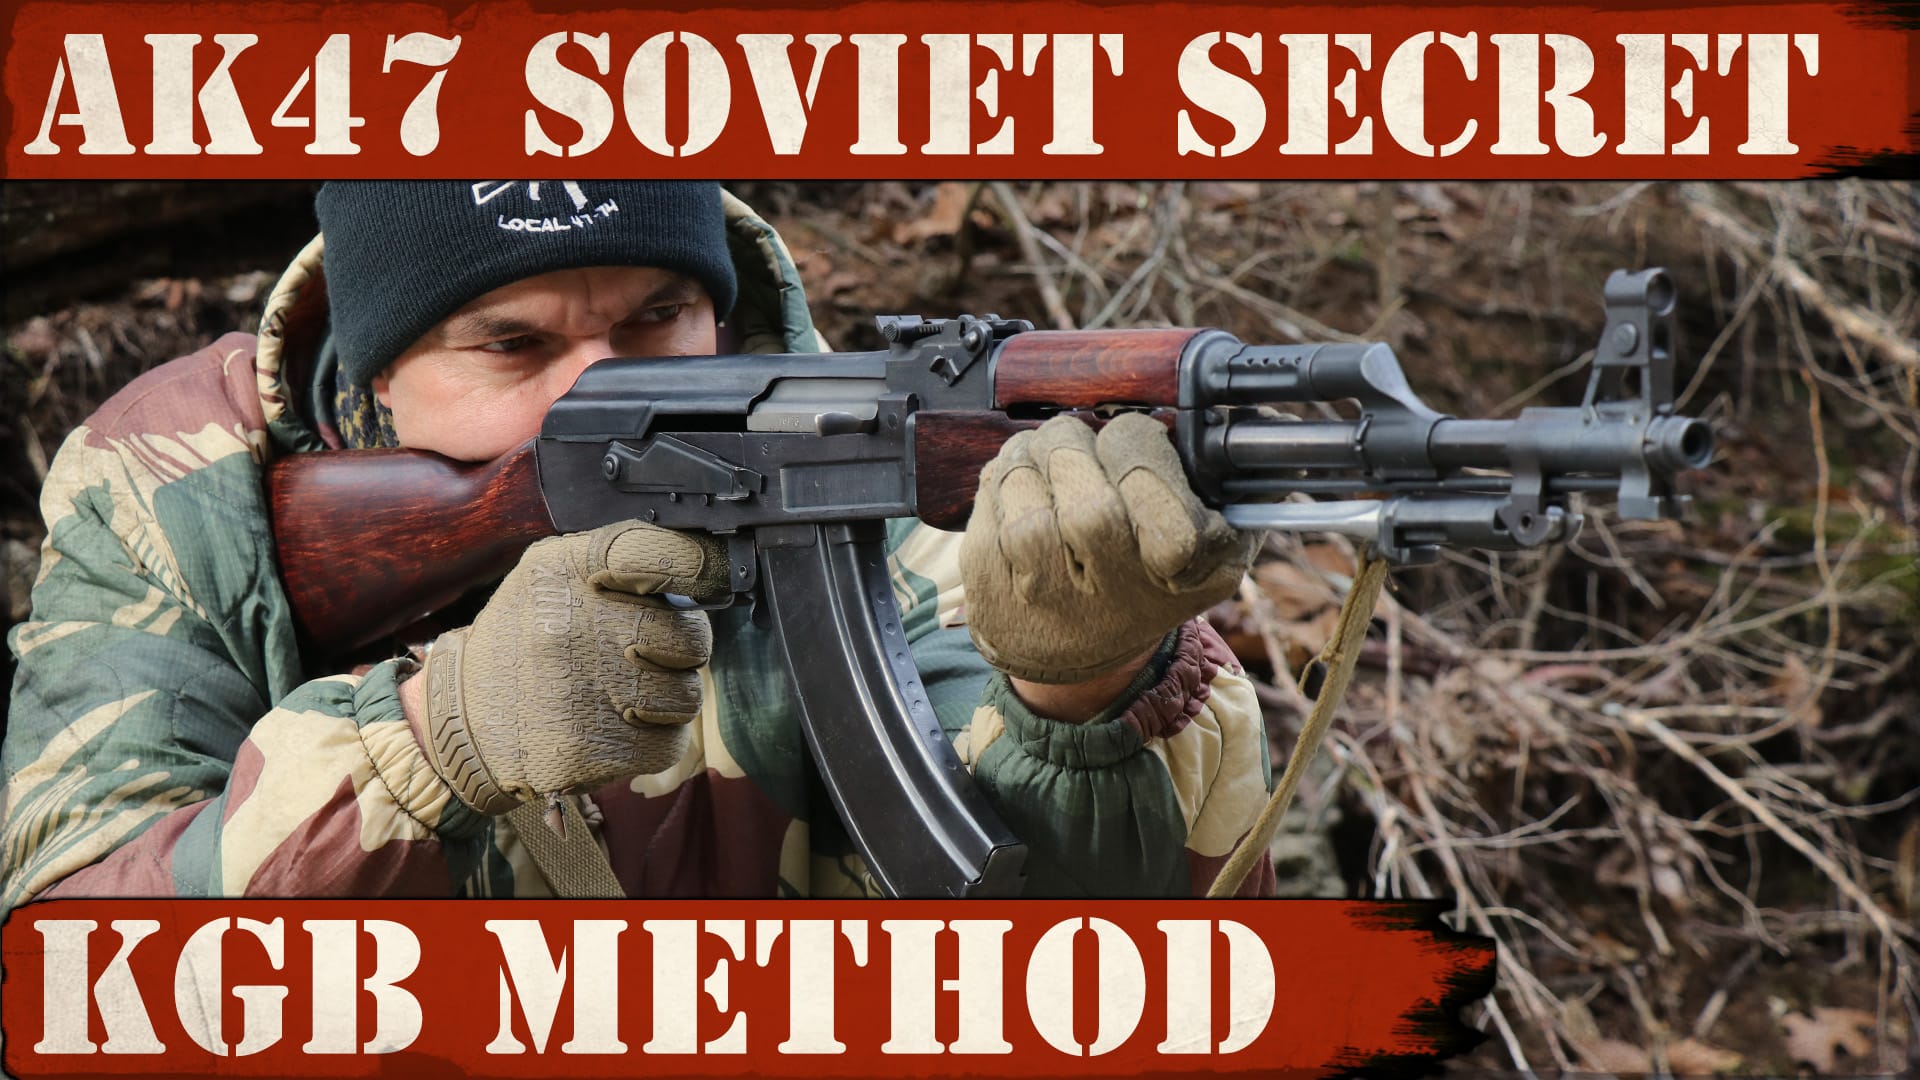 AK47 Secret Soviet KGB Method Exposed!